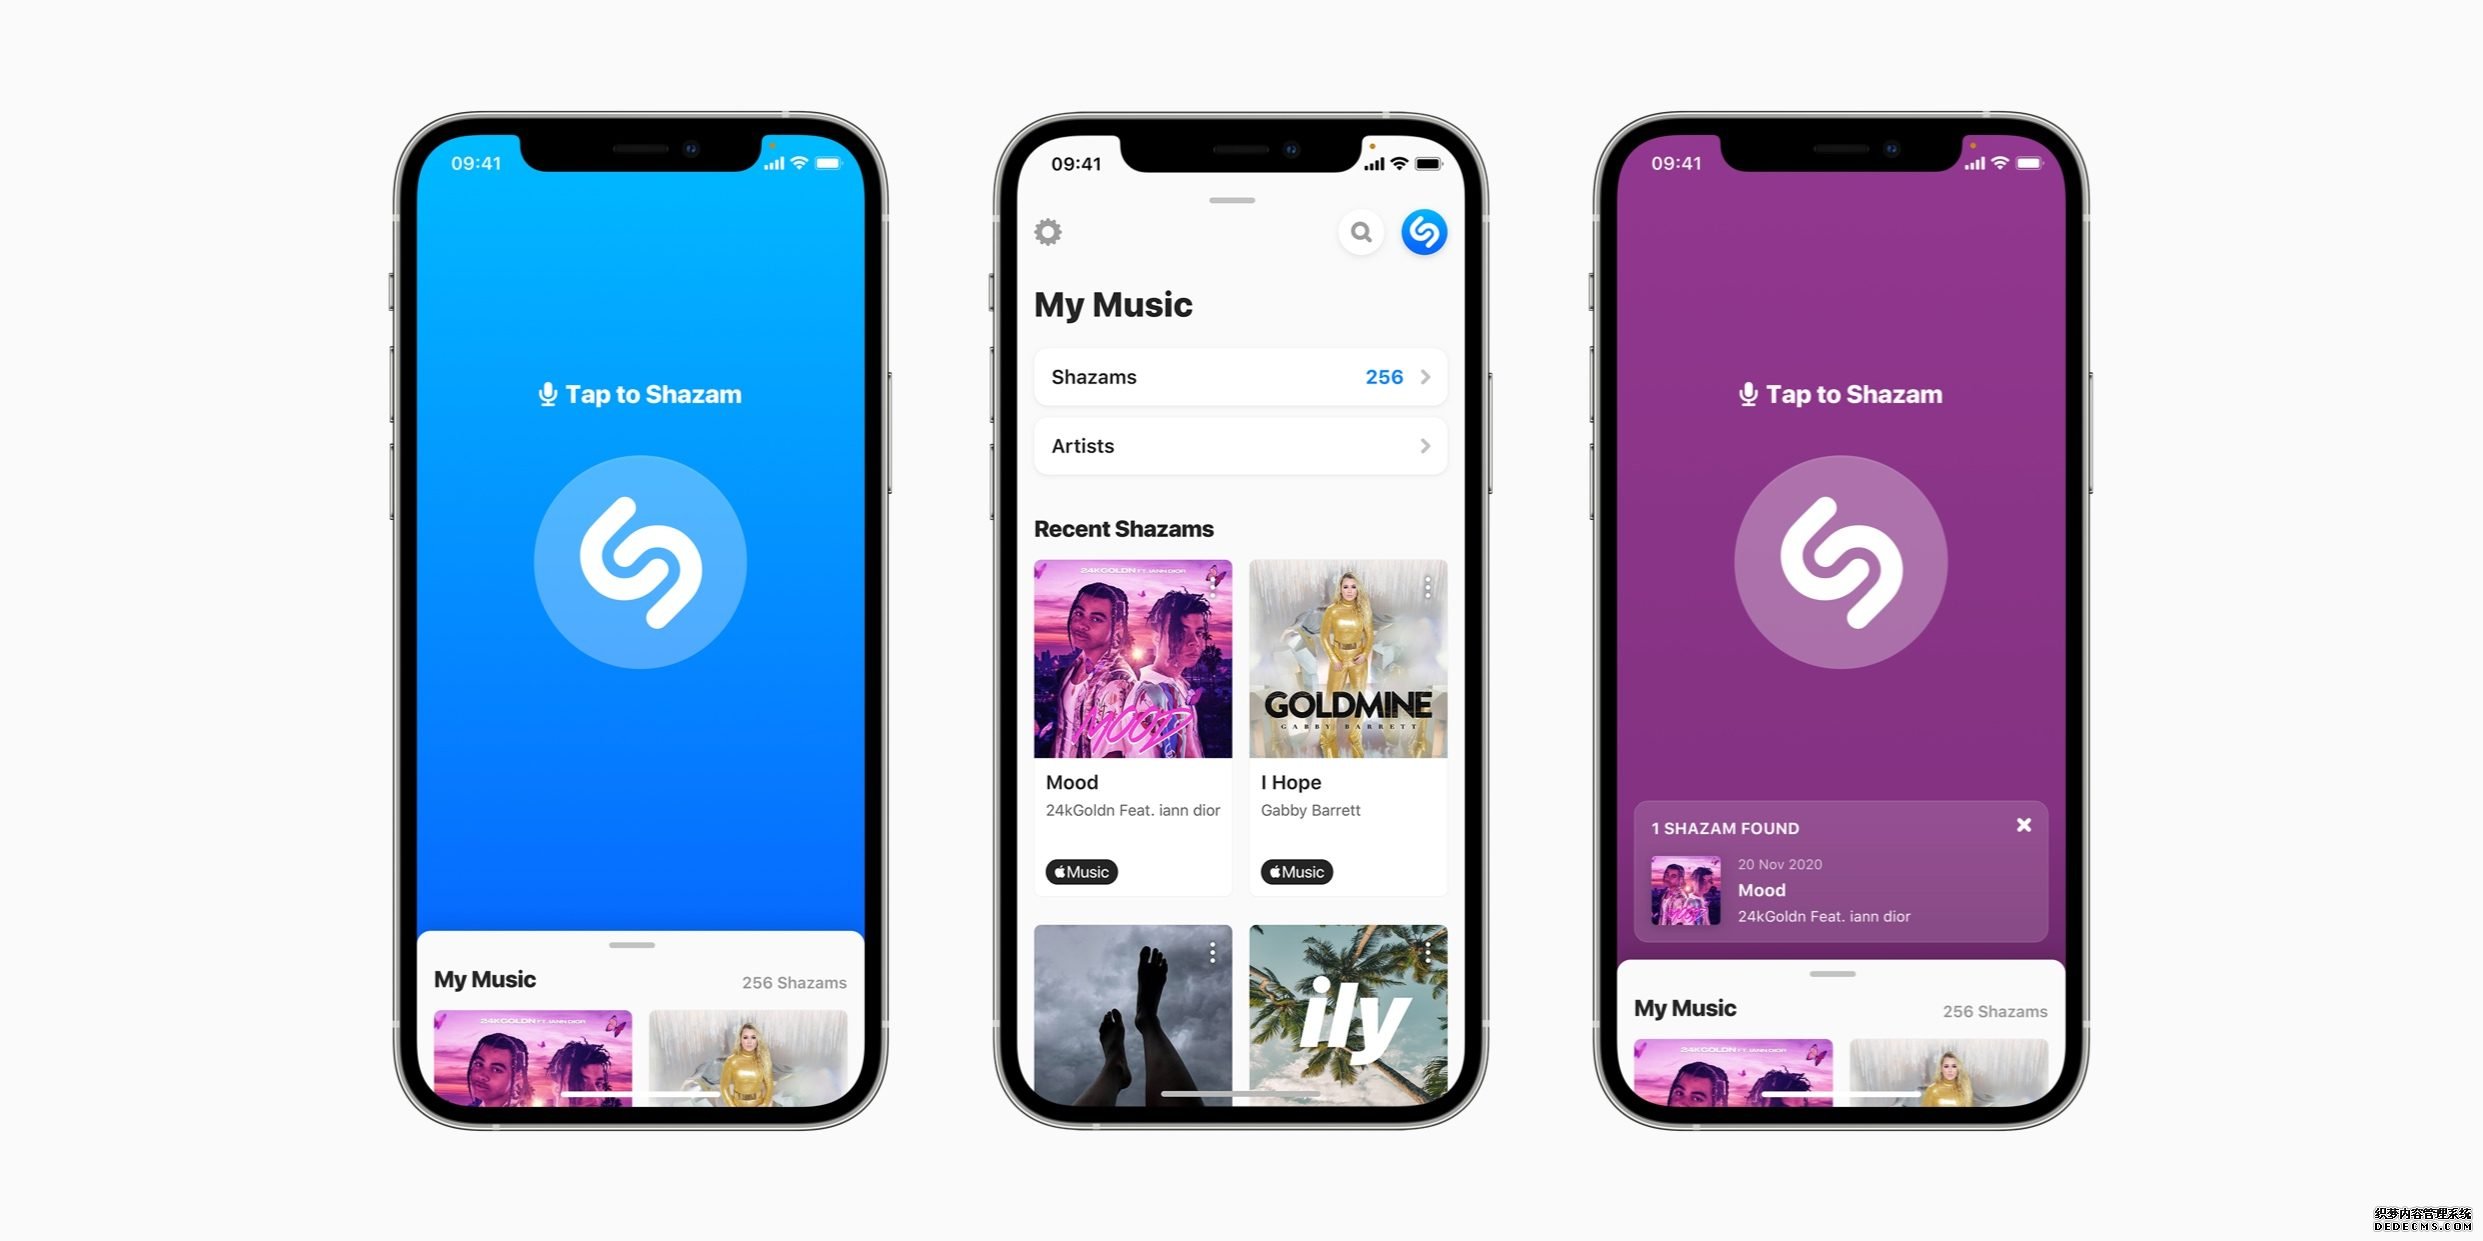 蓝冠官网:苹果指 Shazam 每月识别过十亿首歌曲